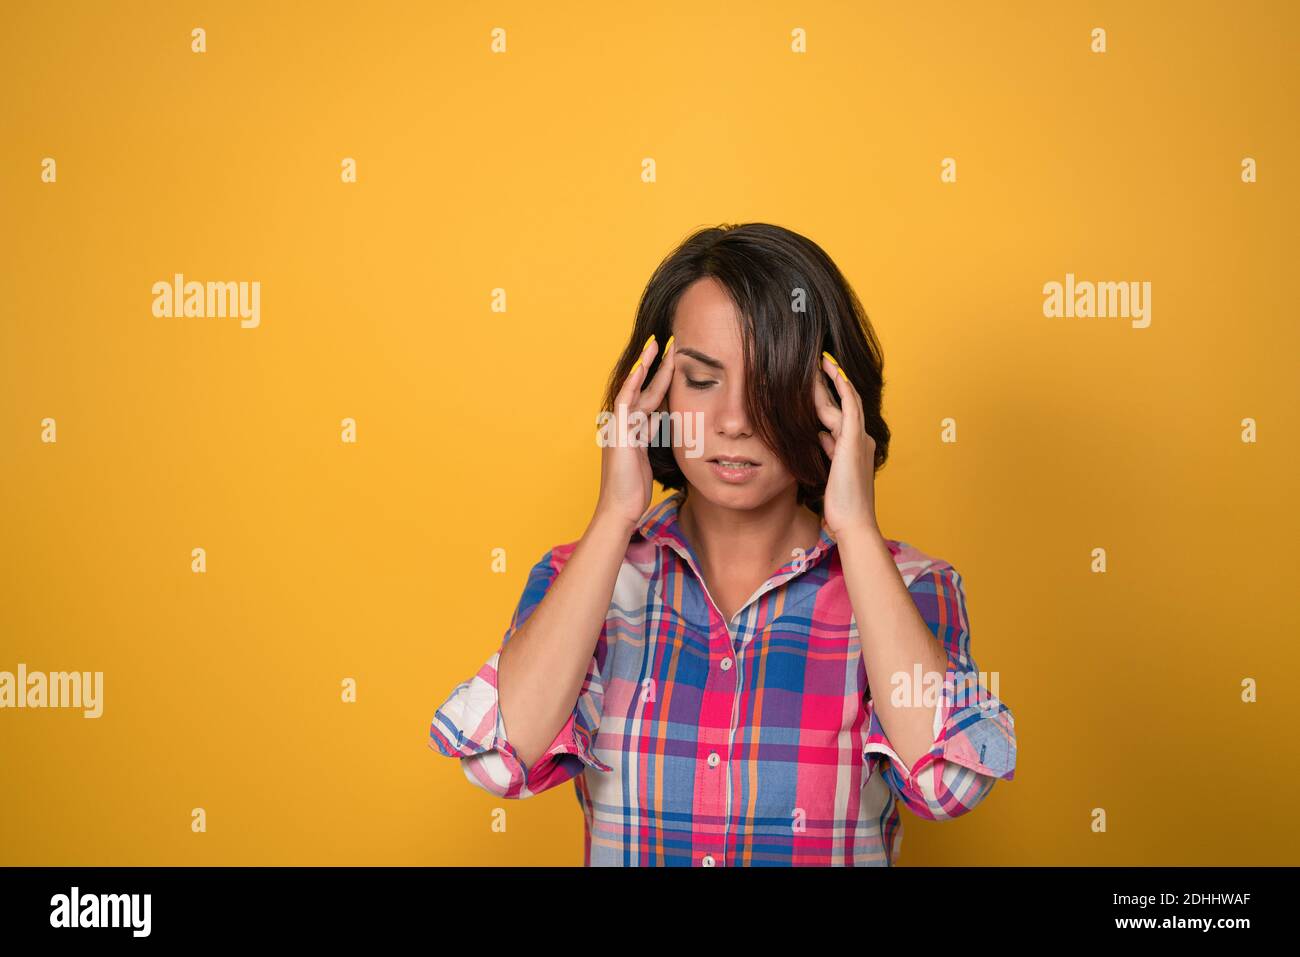 Eine Kopfschmerz habende Frau, die den Kopf hält, der versucht, Migräne zu behandeln, nach unten schaut, während sie gegen die gelbe Wand im Hintergrund mit Kopierraum steht Stockfoto